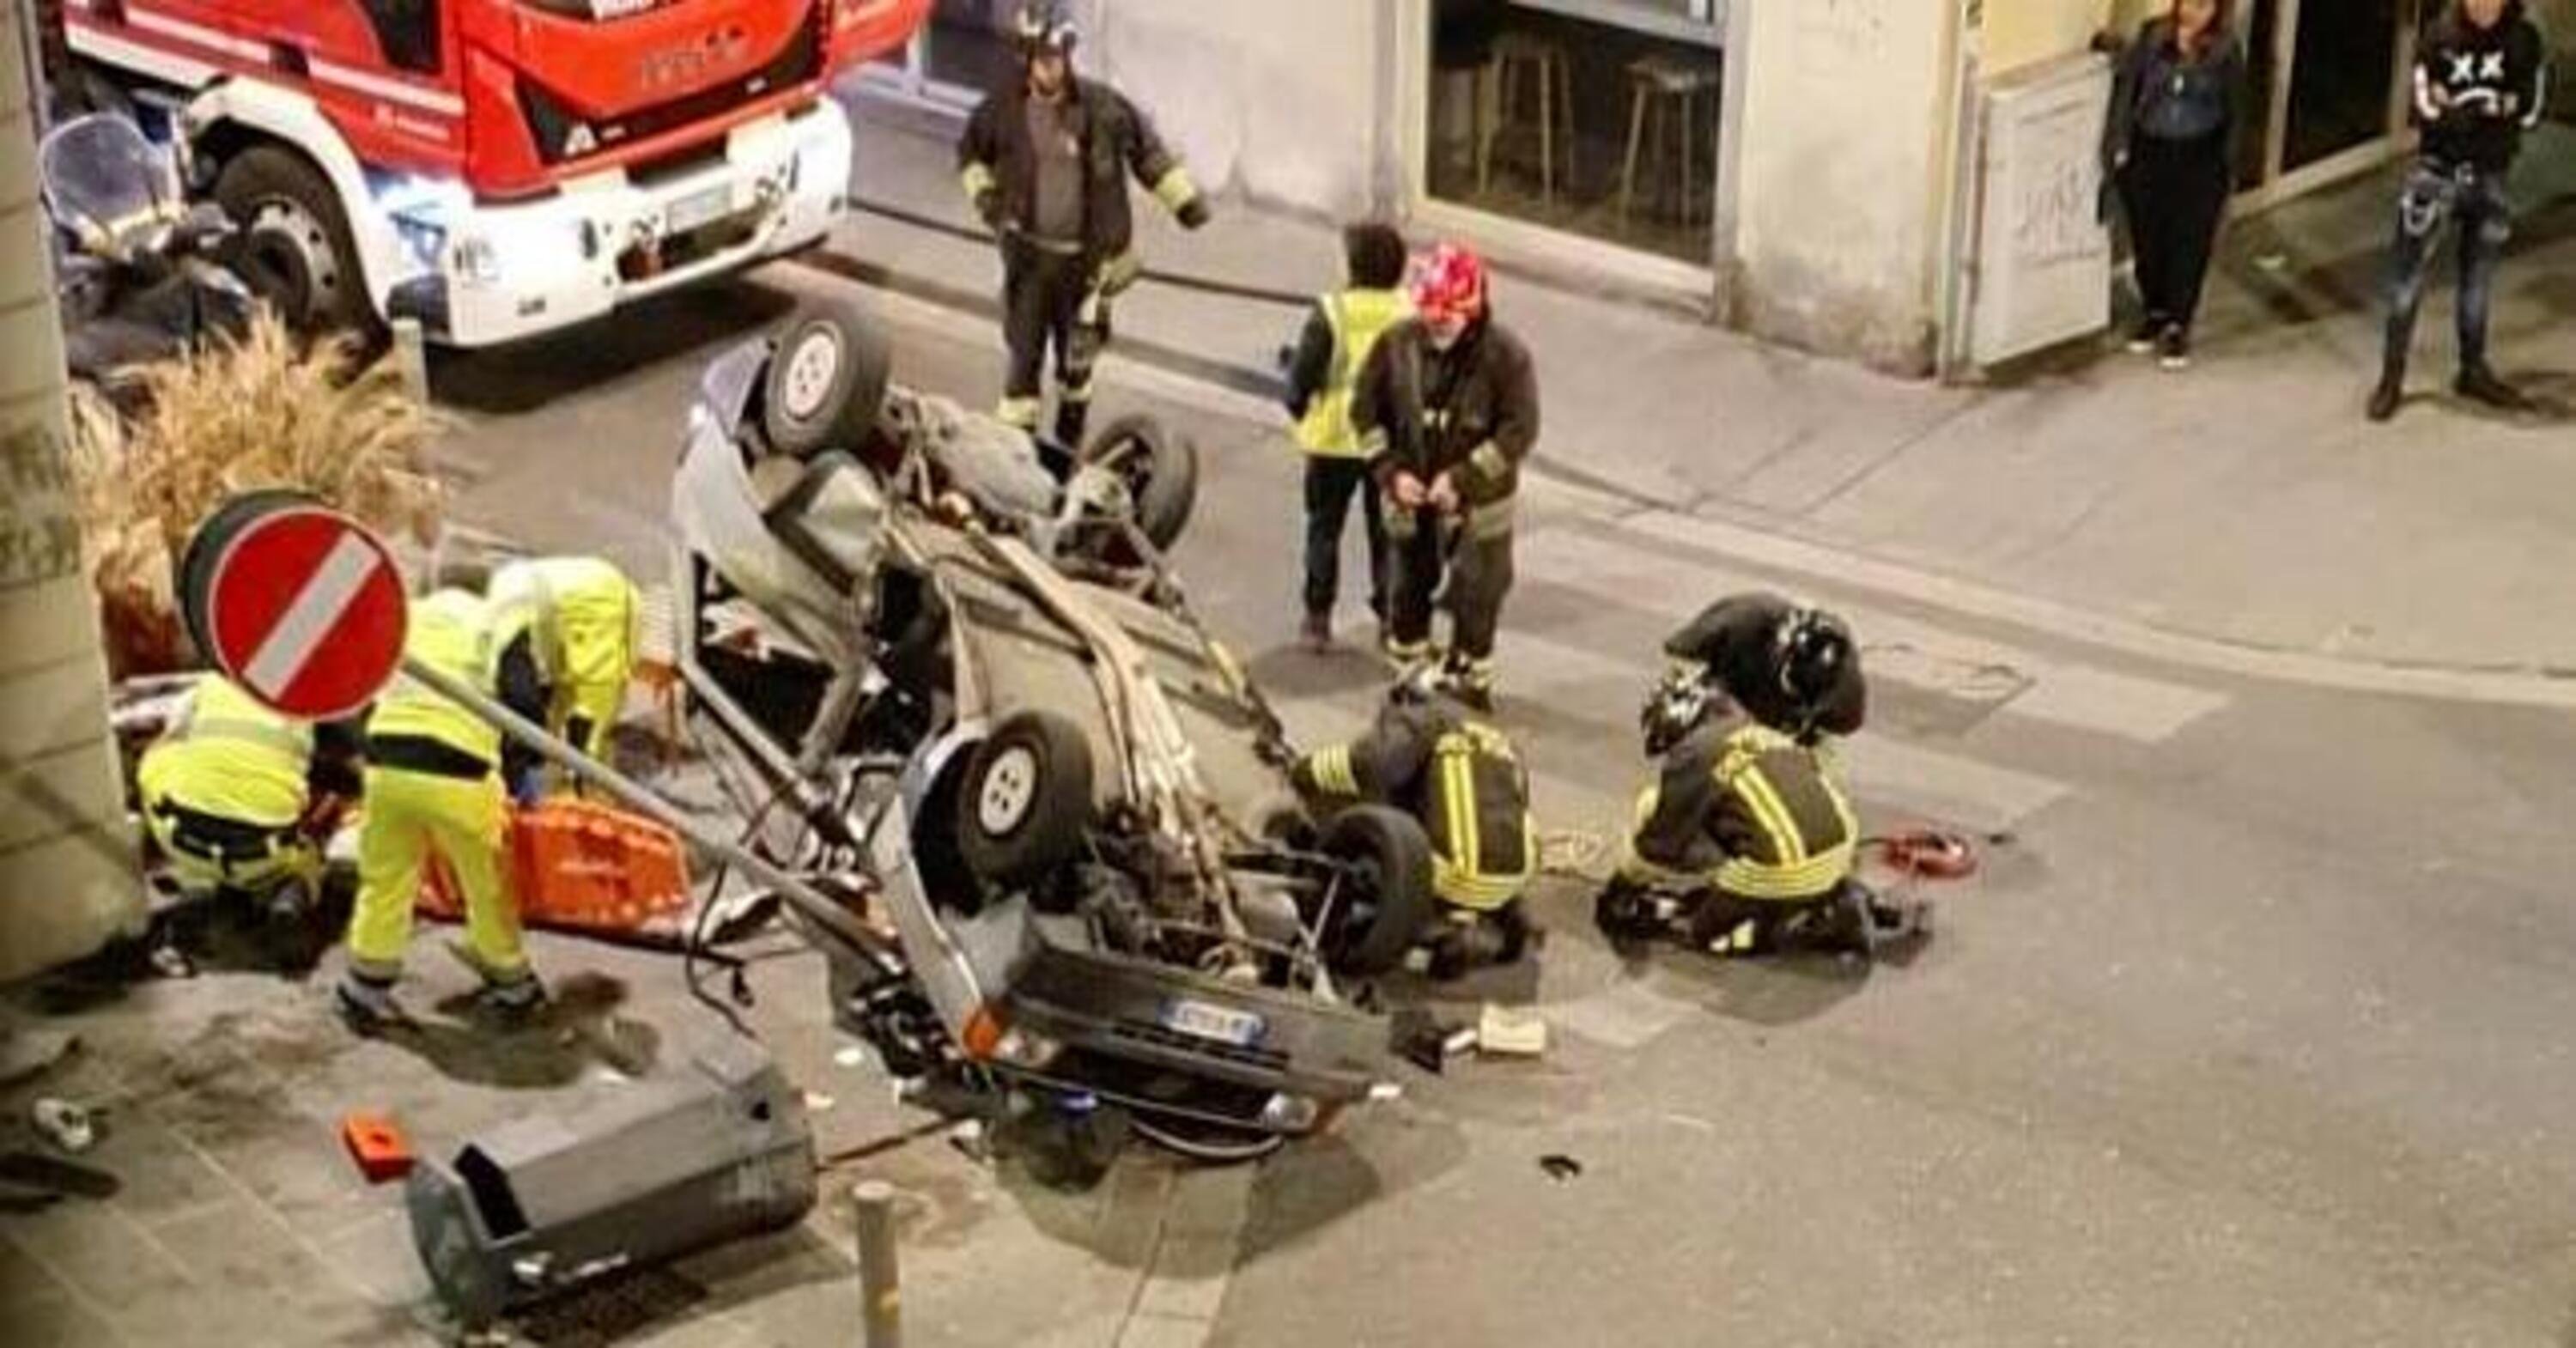 Firenze, incidente mortale in via Gioberti: la moto era rubata e viaggiava contromano a velocit&agrave; folle